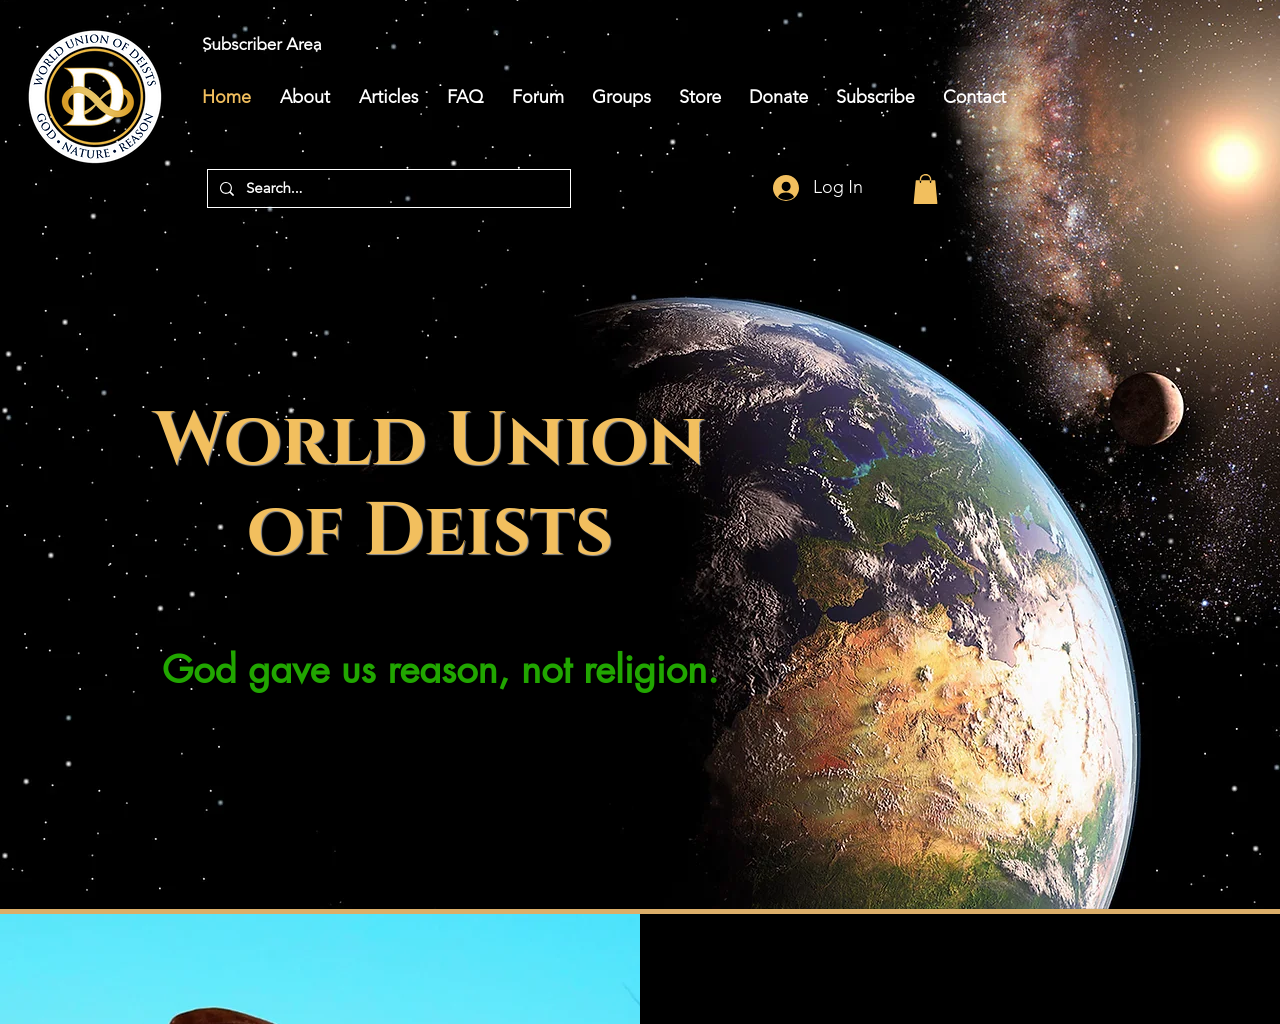 deism.com